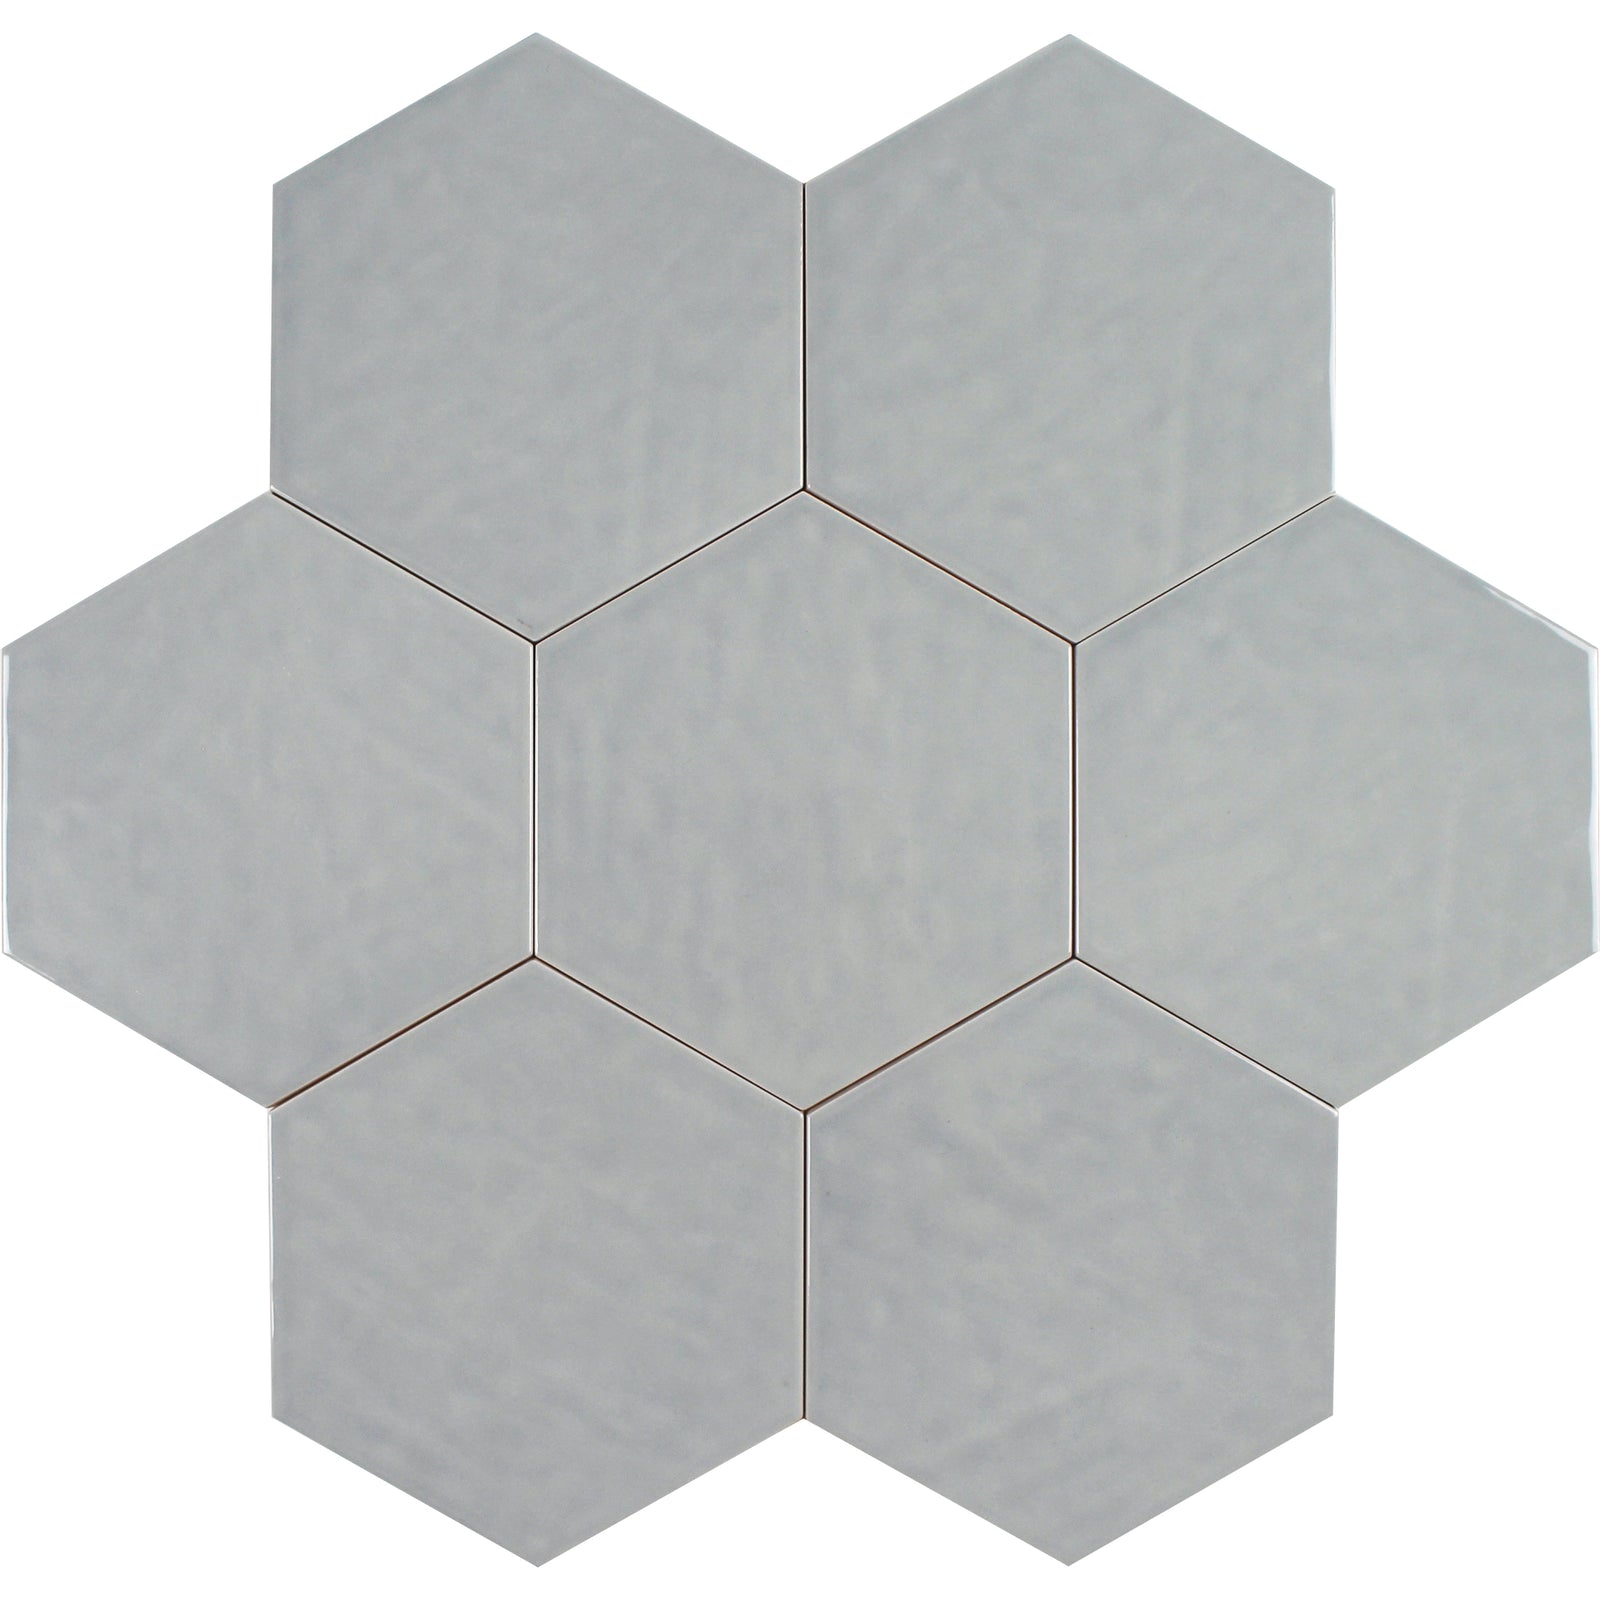 Tesoro - V-Lux Luxury Engineered Tile - Marfil - Floorzz